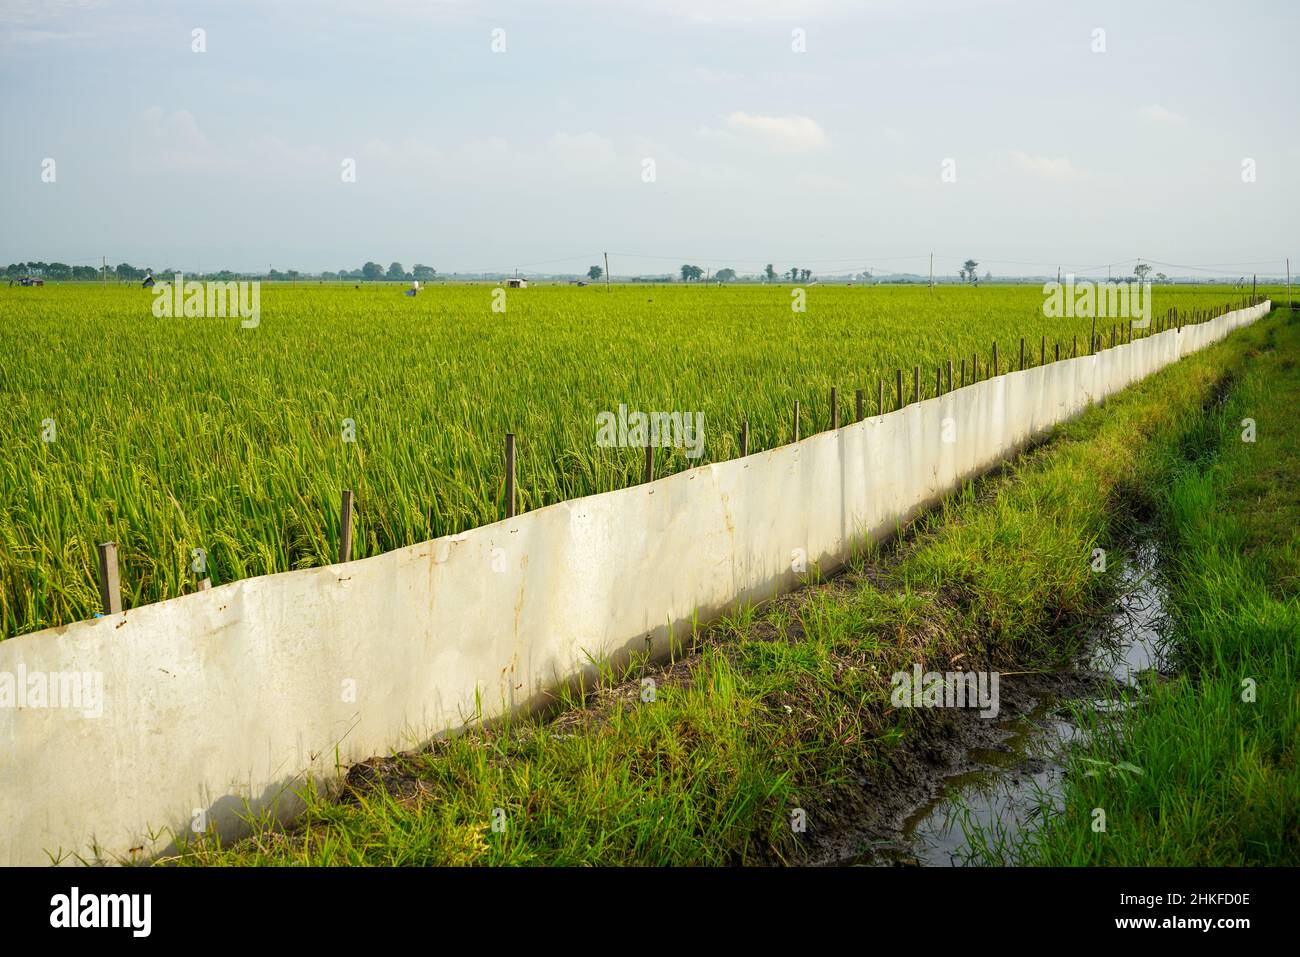 Grüne Reisfelder, die mit Netzen geschützt sind, damit sie nicht von Schädlingen gefressen oder angegriffen werden, die Kulturen wie Ratten und Vögel schädigen. Stockfoto